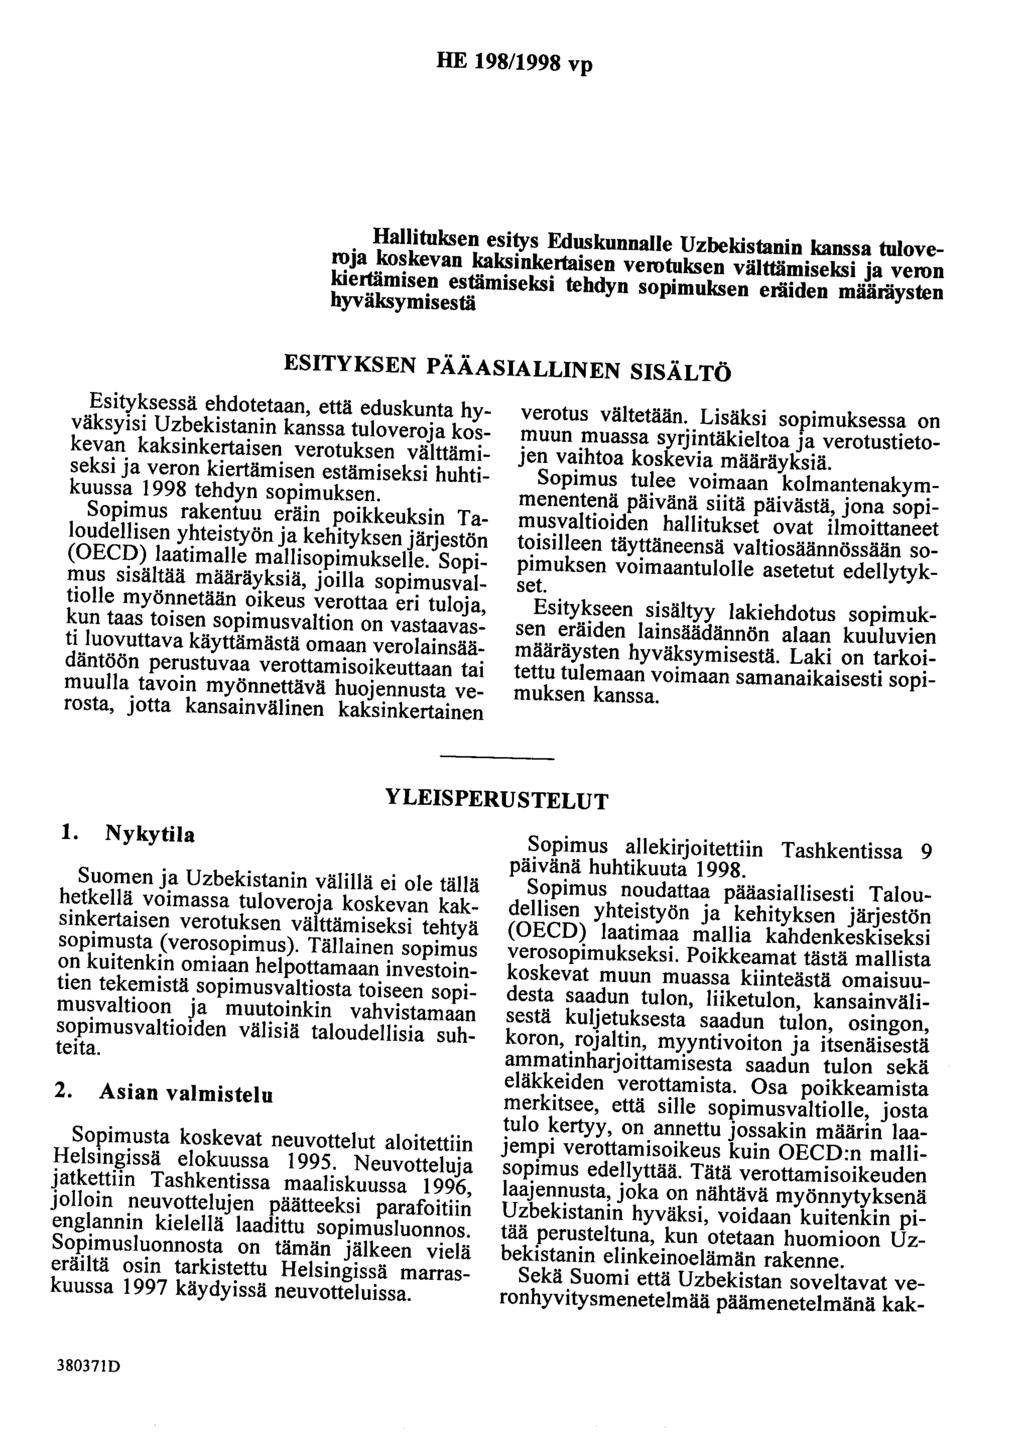 HE 198/1998 vp Hallituksen esitys Eduskunnalle Uzbekistanin kanssa tuloveroja koskevan kaksinkertaisen verotuksen välttämiseksi ja veron kiertämisen estämiseksi tehdyn sopimuksen eräiden määräysten